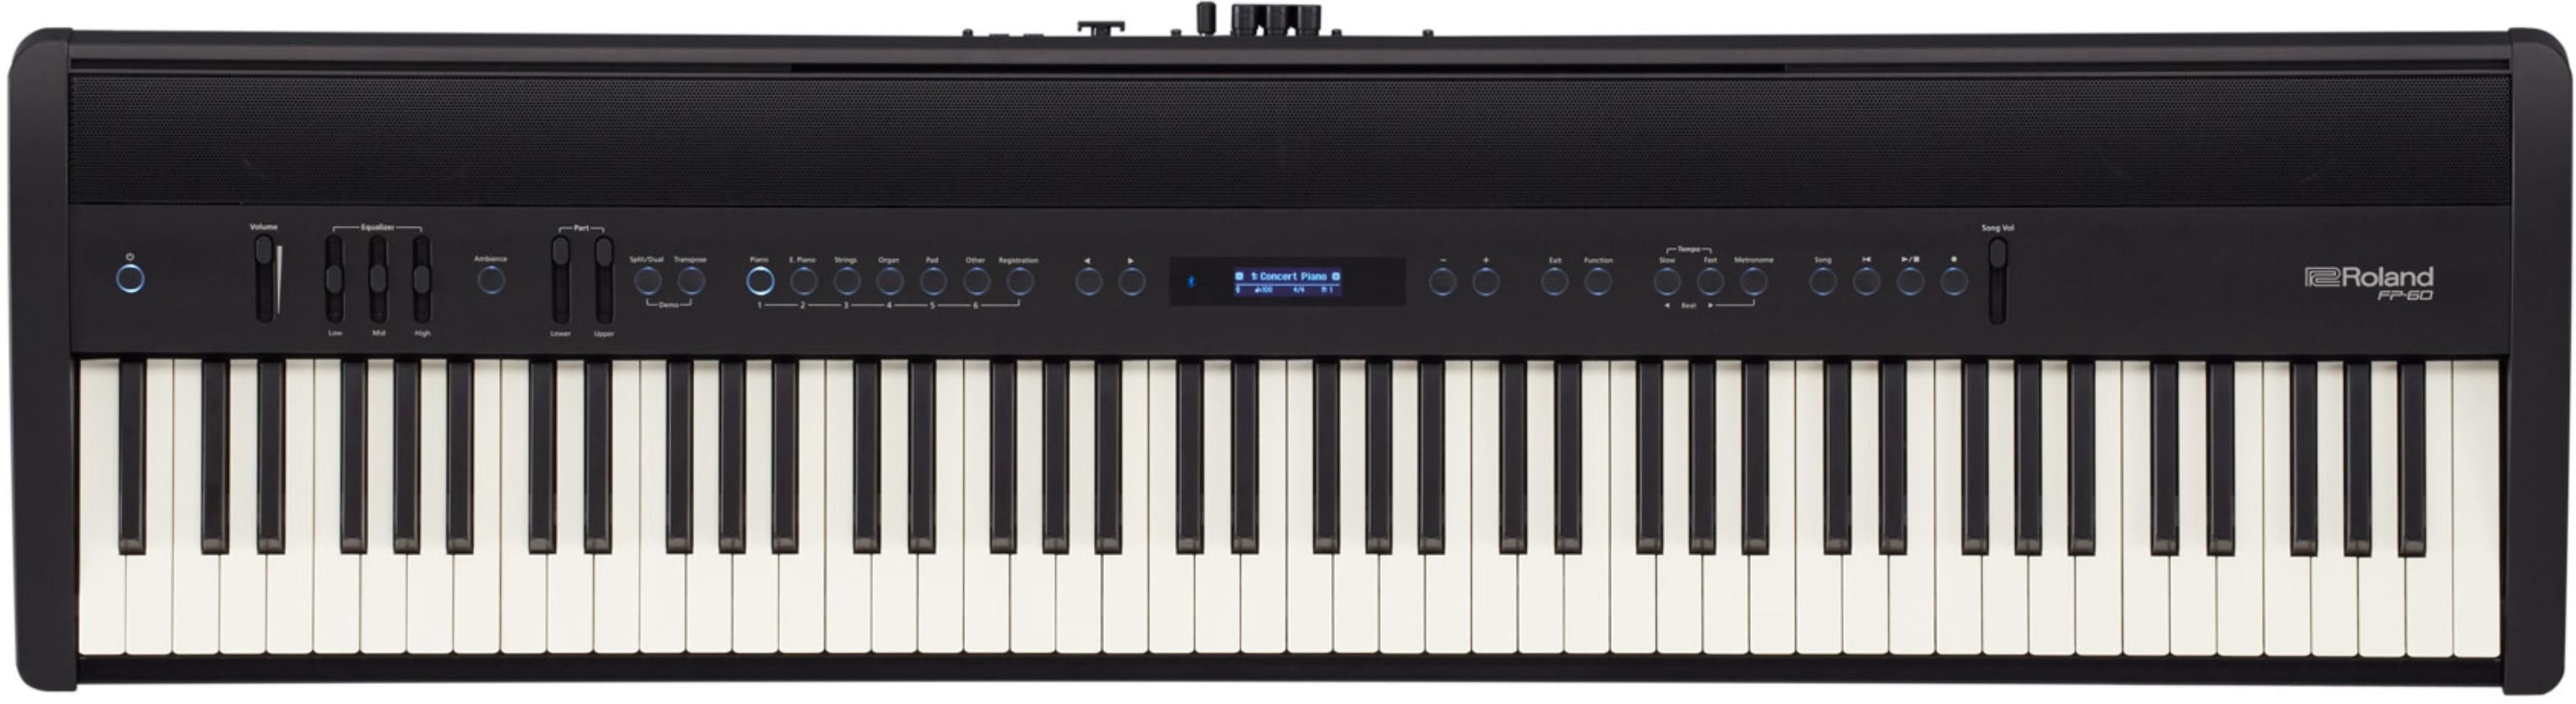 Roland FP-60X-BK цифровое фортепиано, 88 клавиш эм.слоновой кости, технологиия SuperNATURAL Piano, 288 полифония от музыкального магазина МОРОЗ МЬЮЗИК